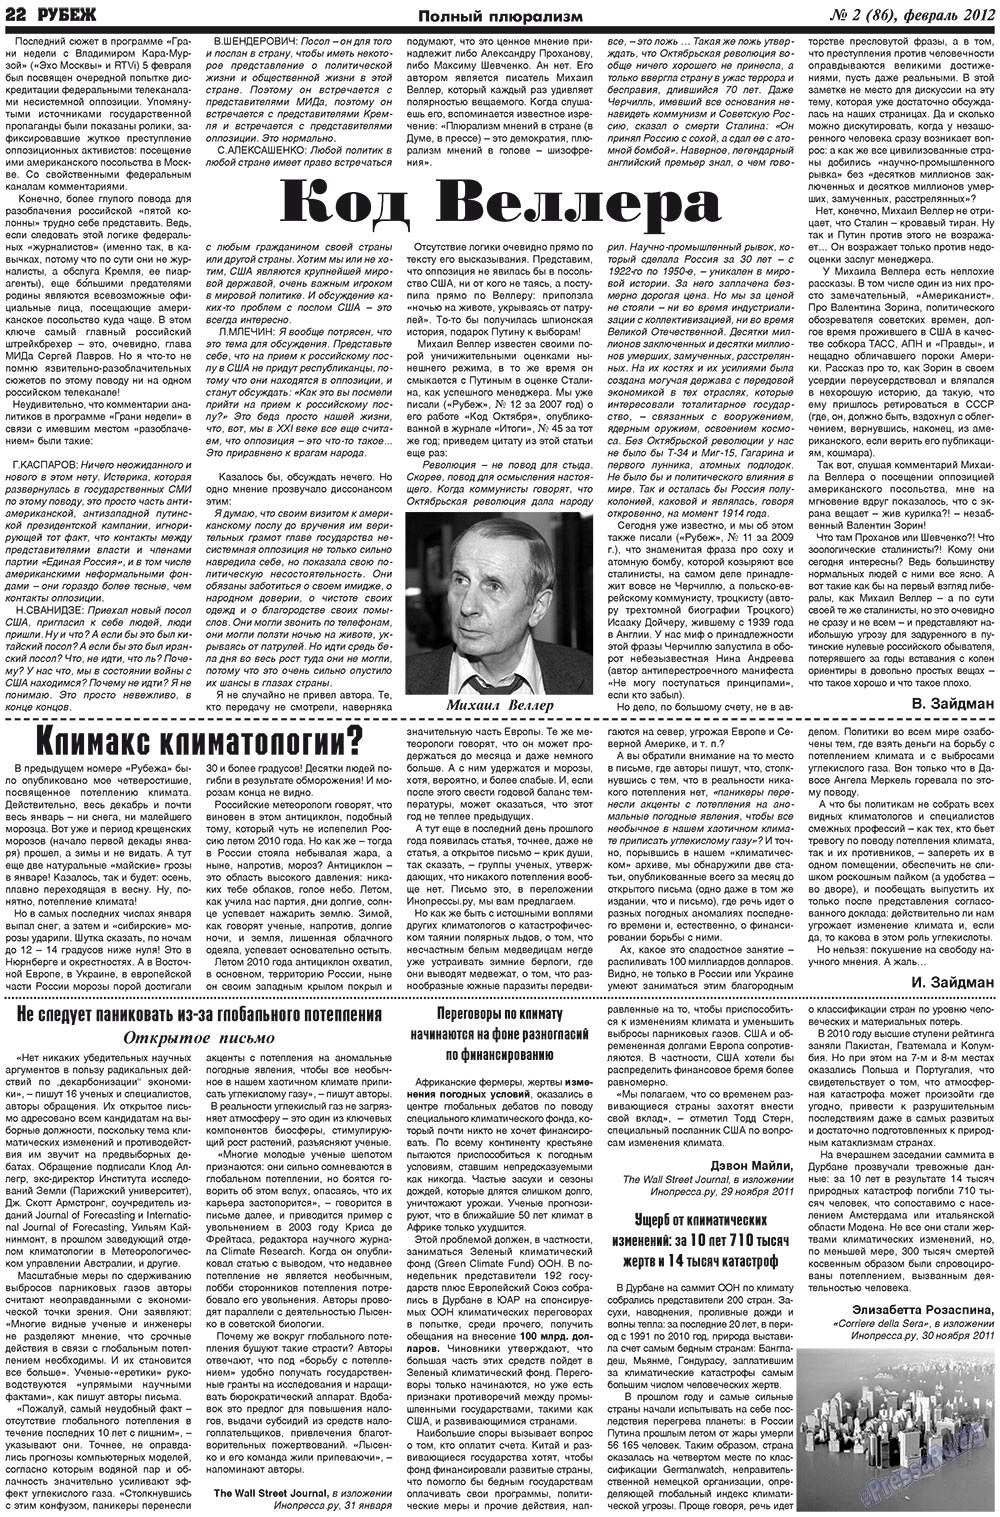 Рубеж (газета). 2012 год, номер 2, стр. 22